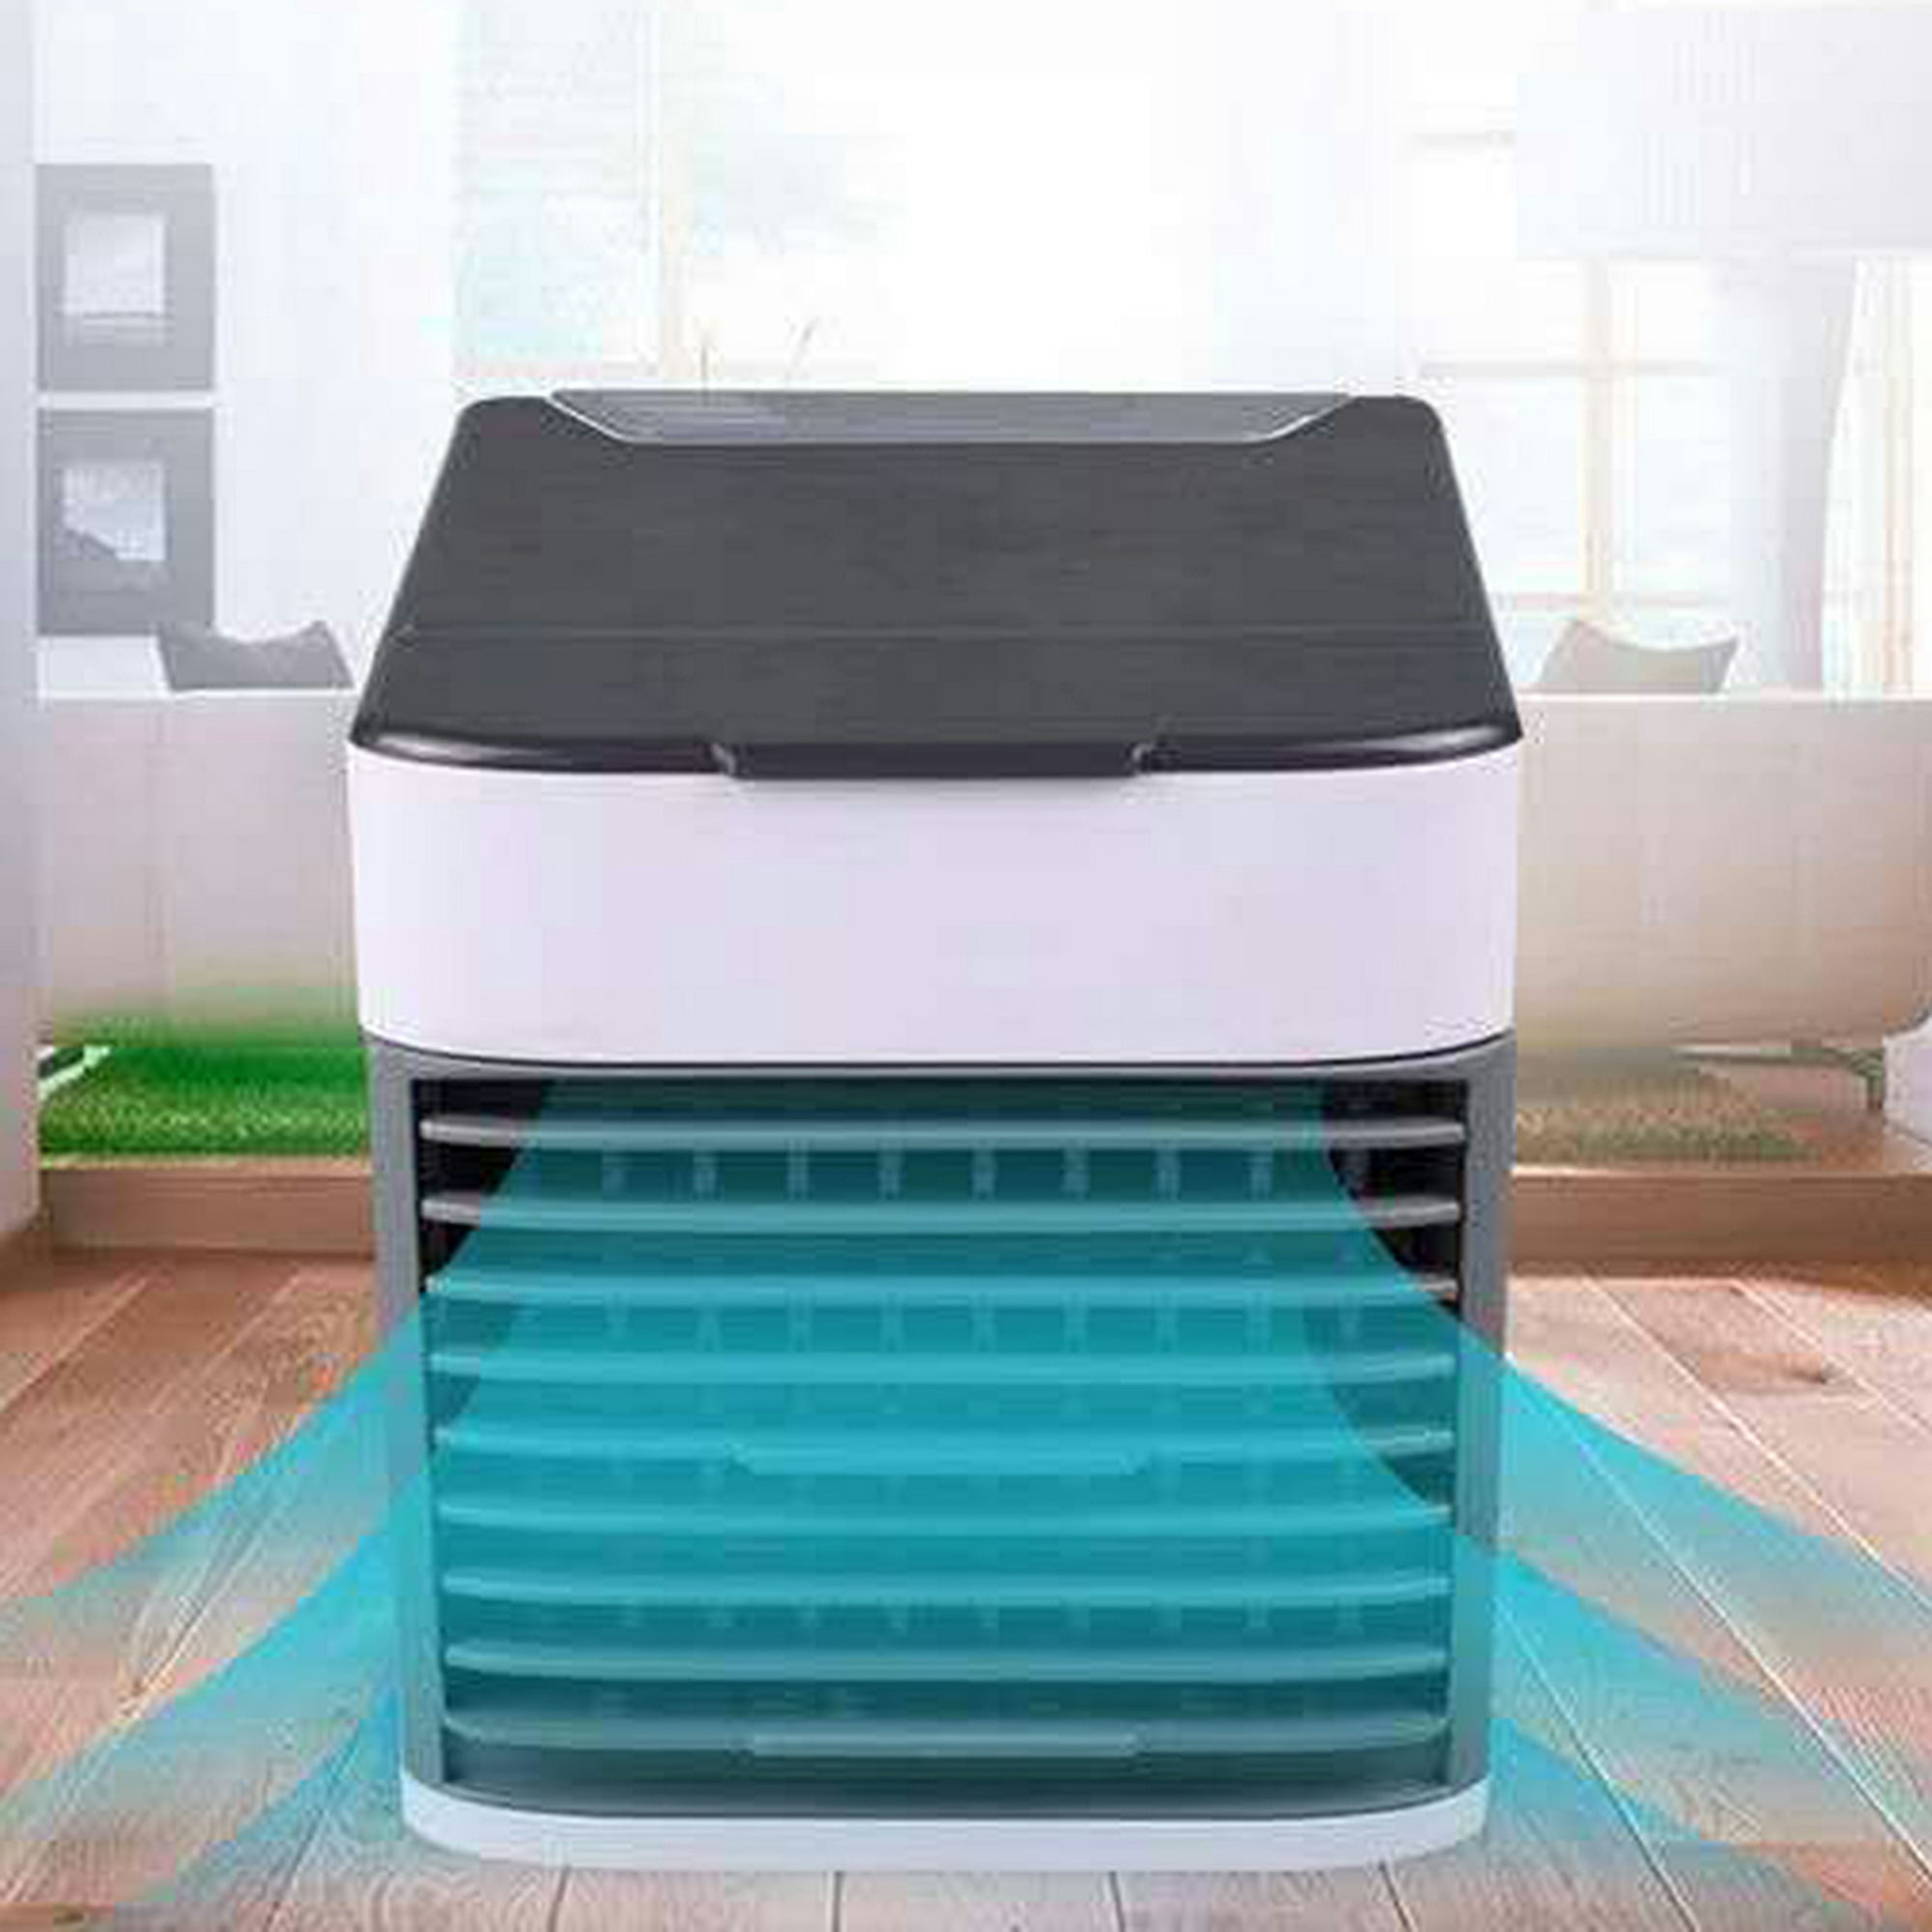 Refrigerador Automático 300 L Dark Silver Mabe - RMA300FXMRQ0